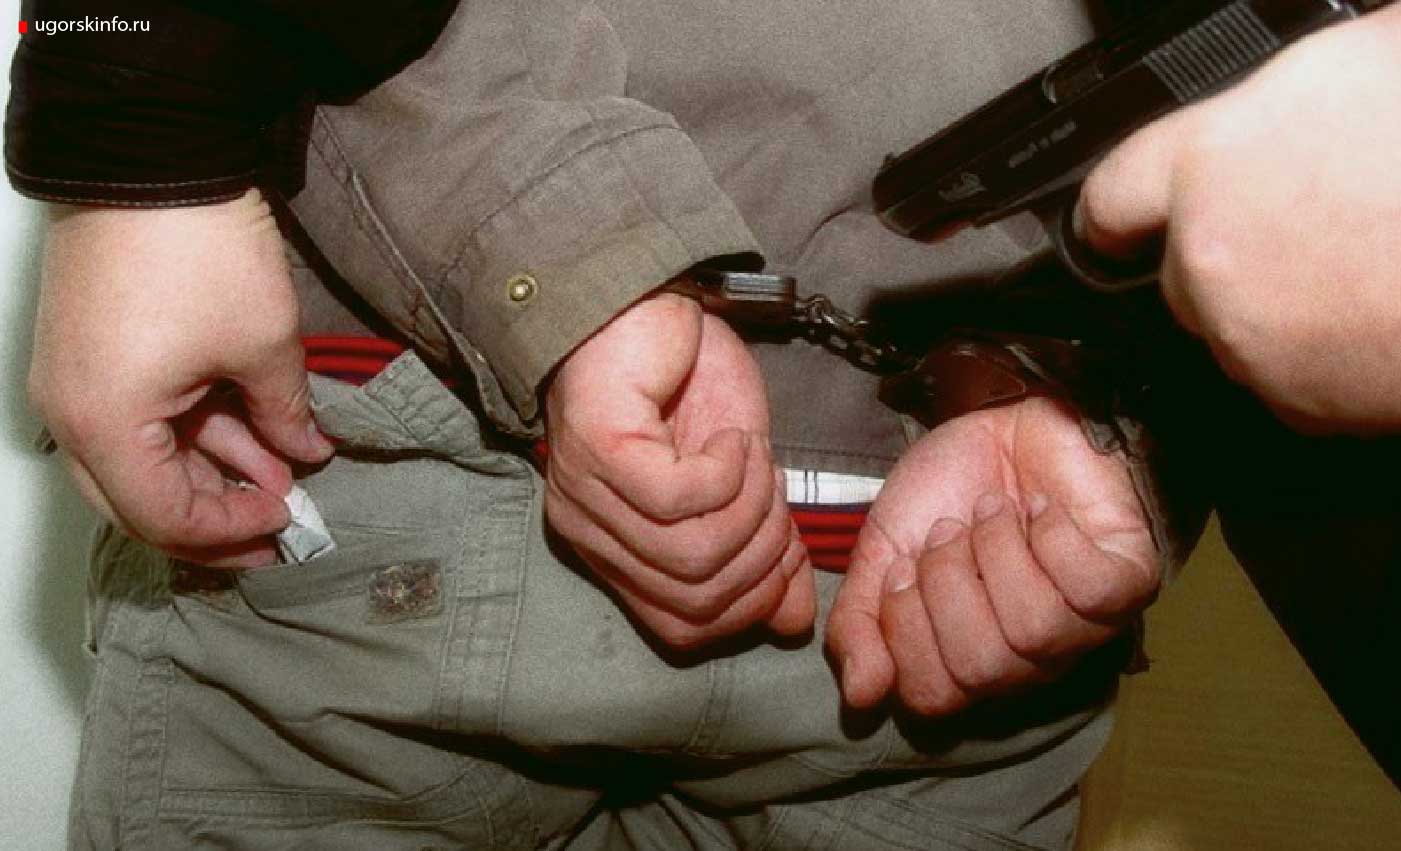 Сотрудники югорской полиции возбудили сразу два уголовных дела по факту хранения наркотических средств.